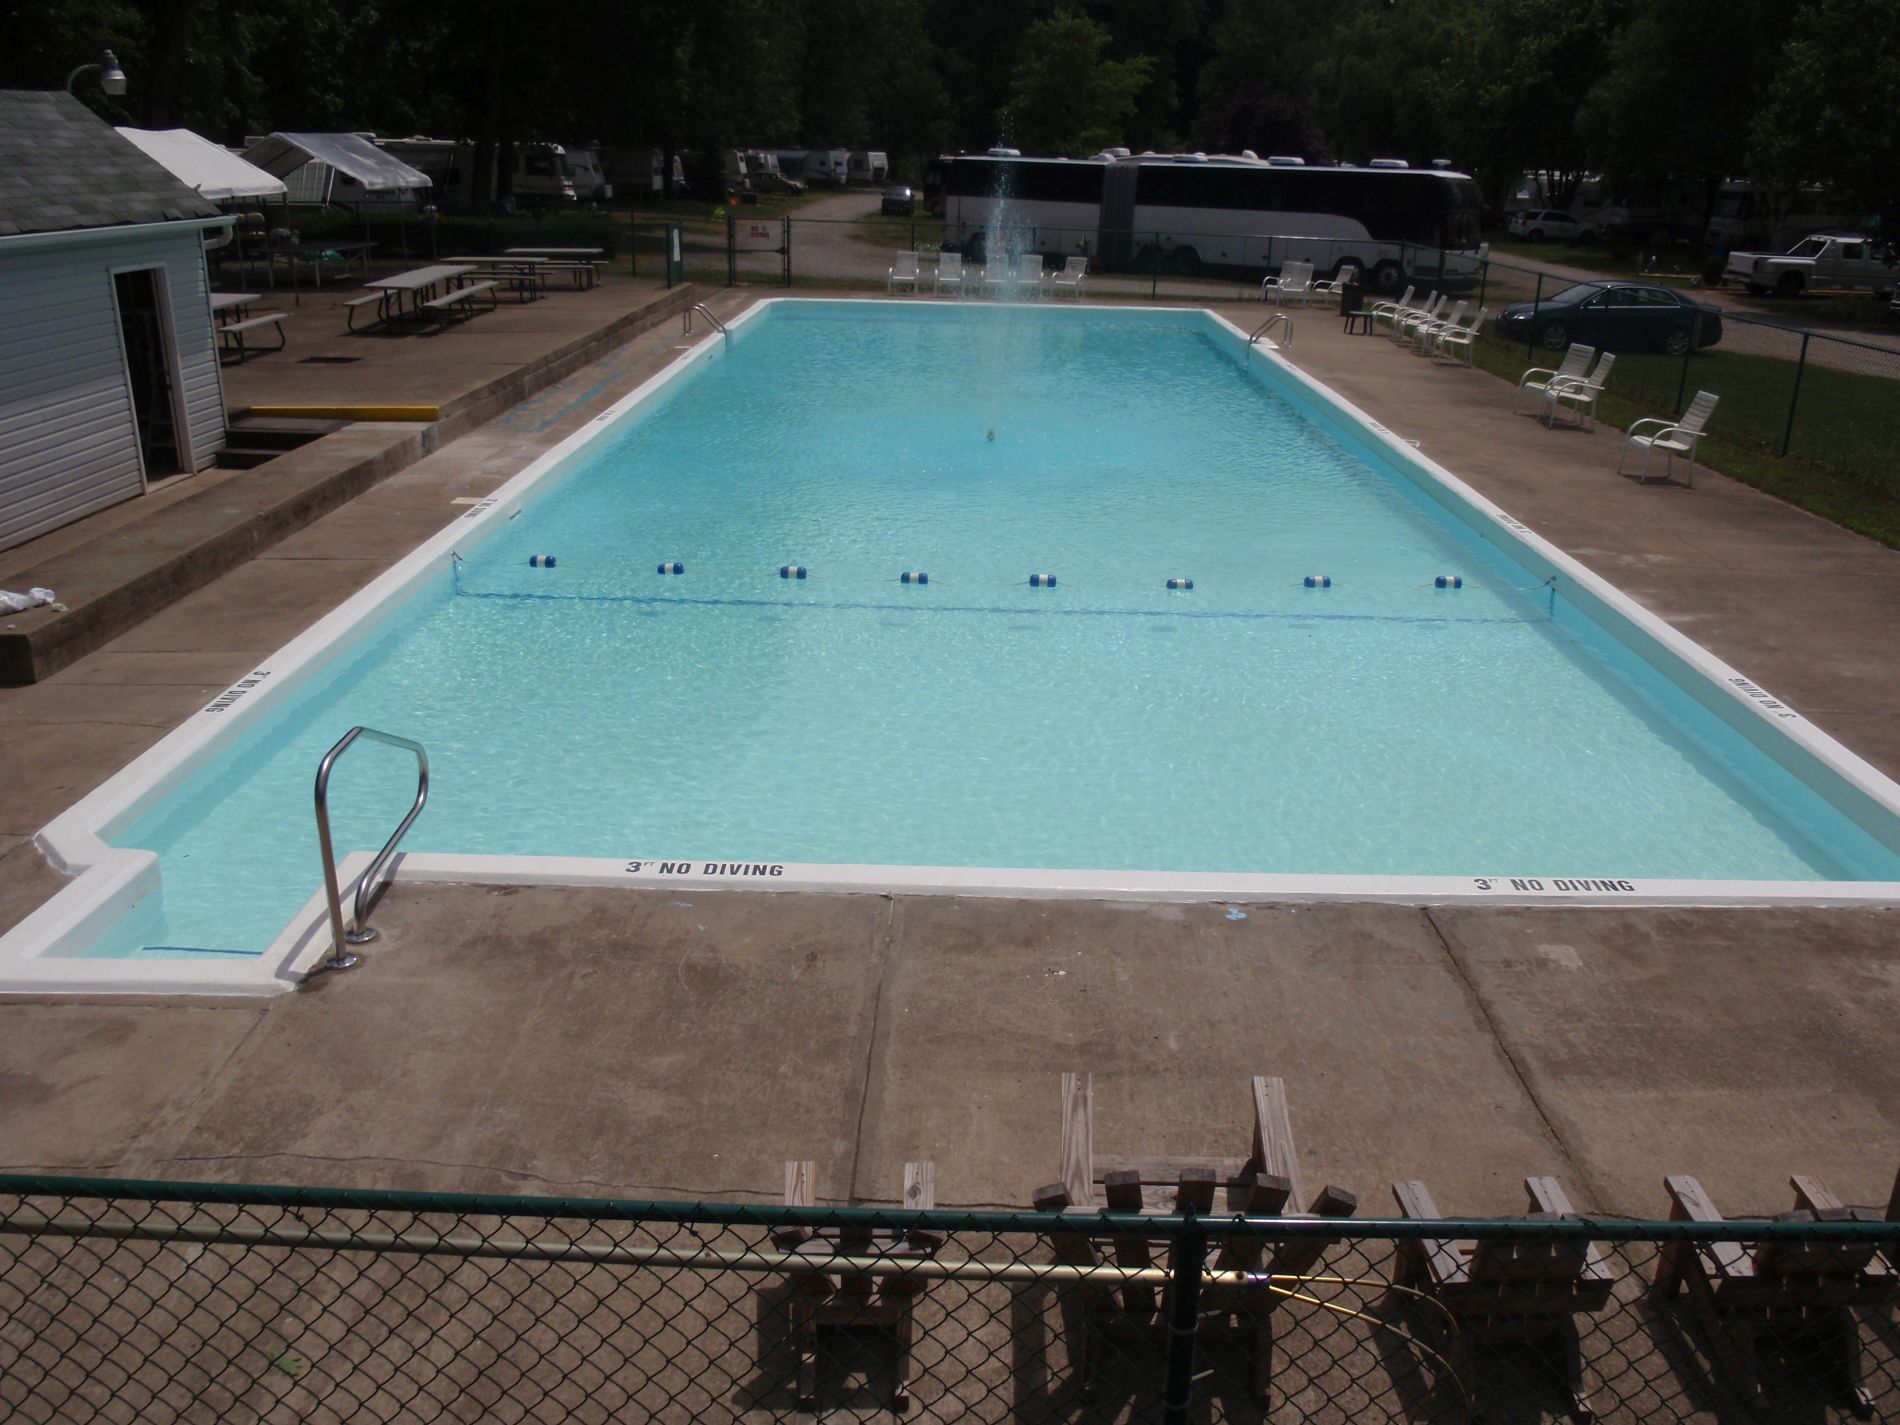 Pool Repair Resurfacing Conversion Remodeling Swimming Pool